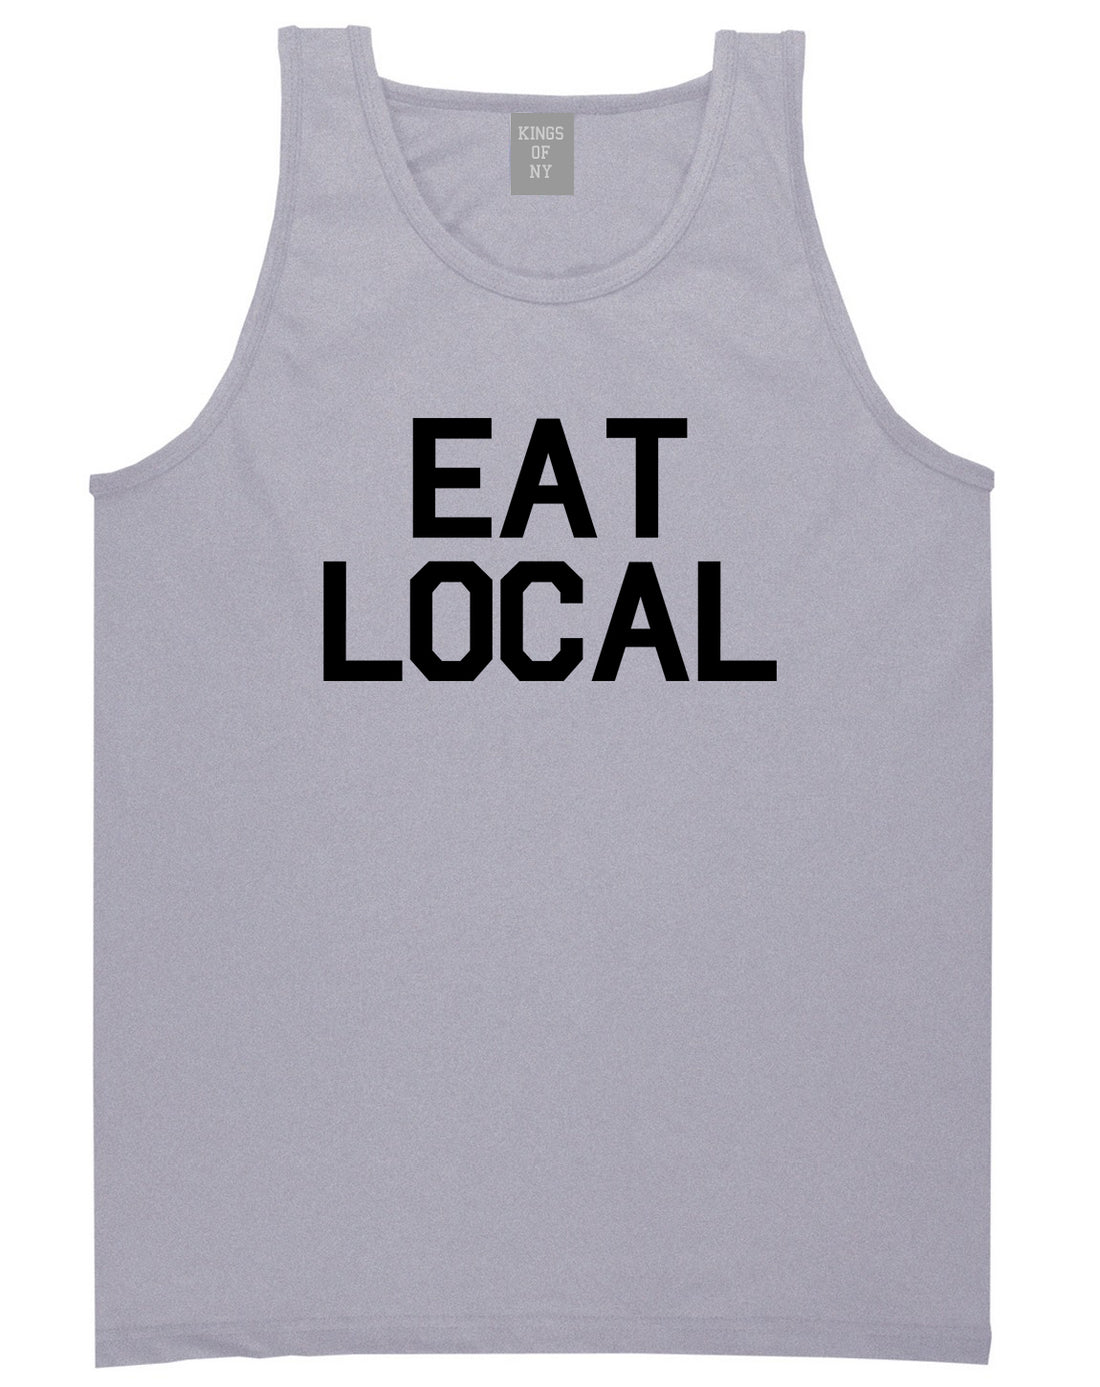 Eat_Local_Buy Mens Grey Tank Top Shirt by Kings Of NY